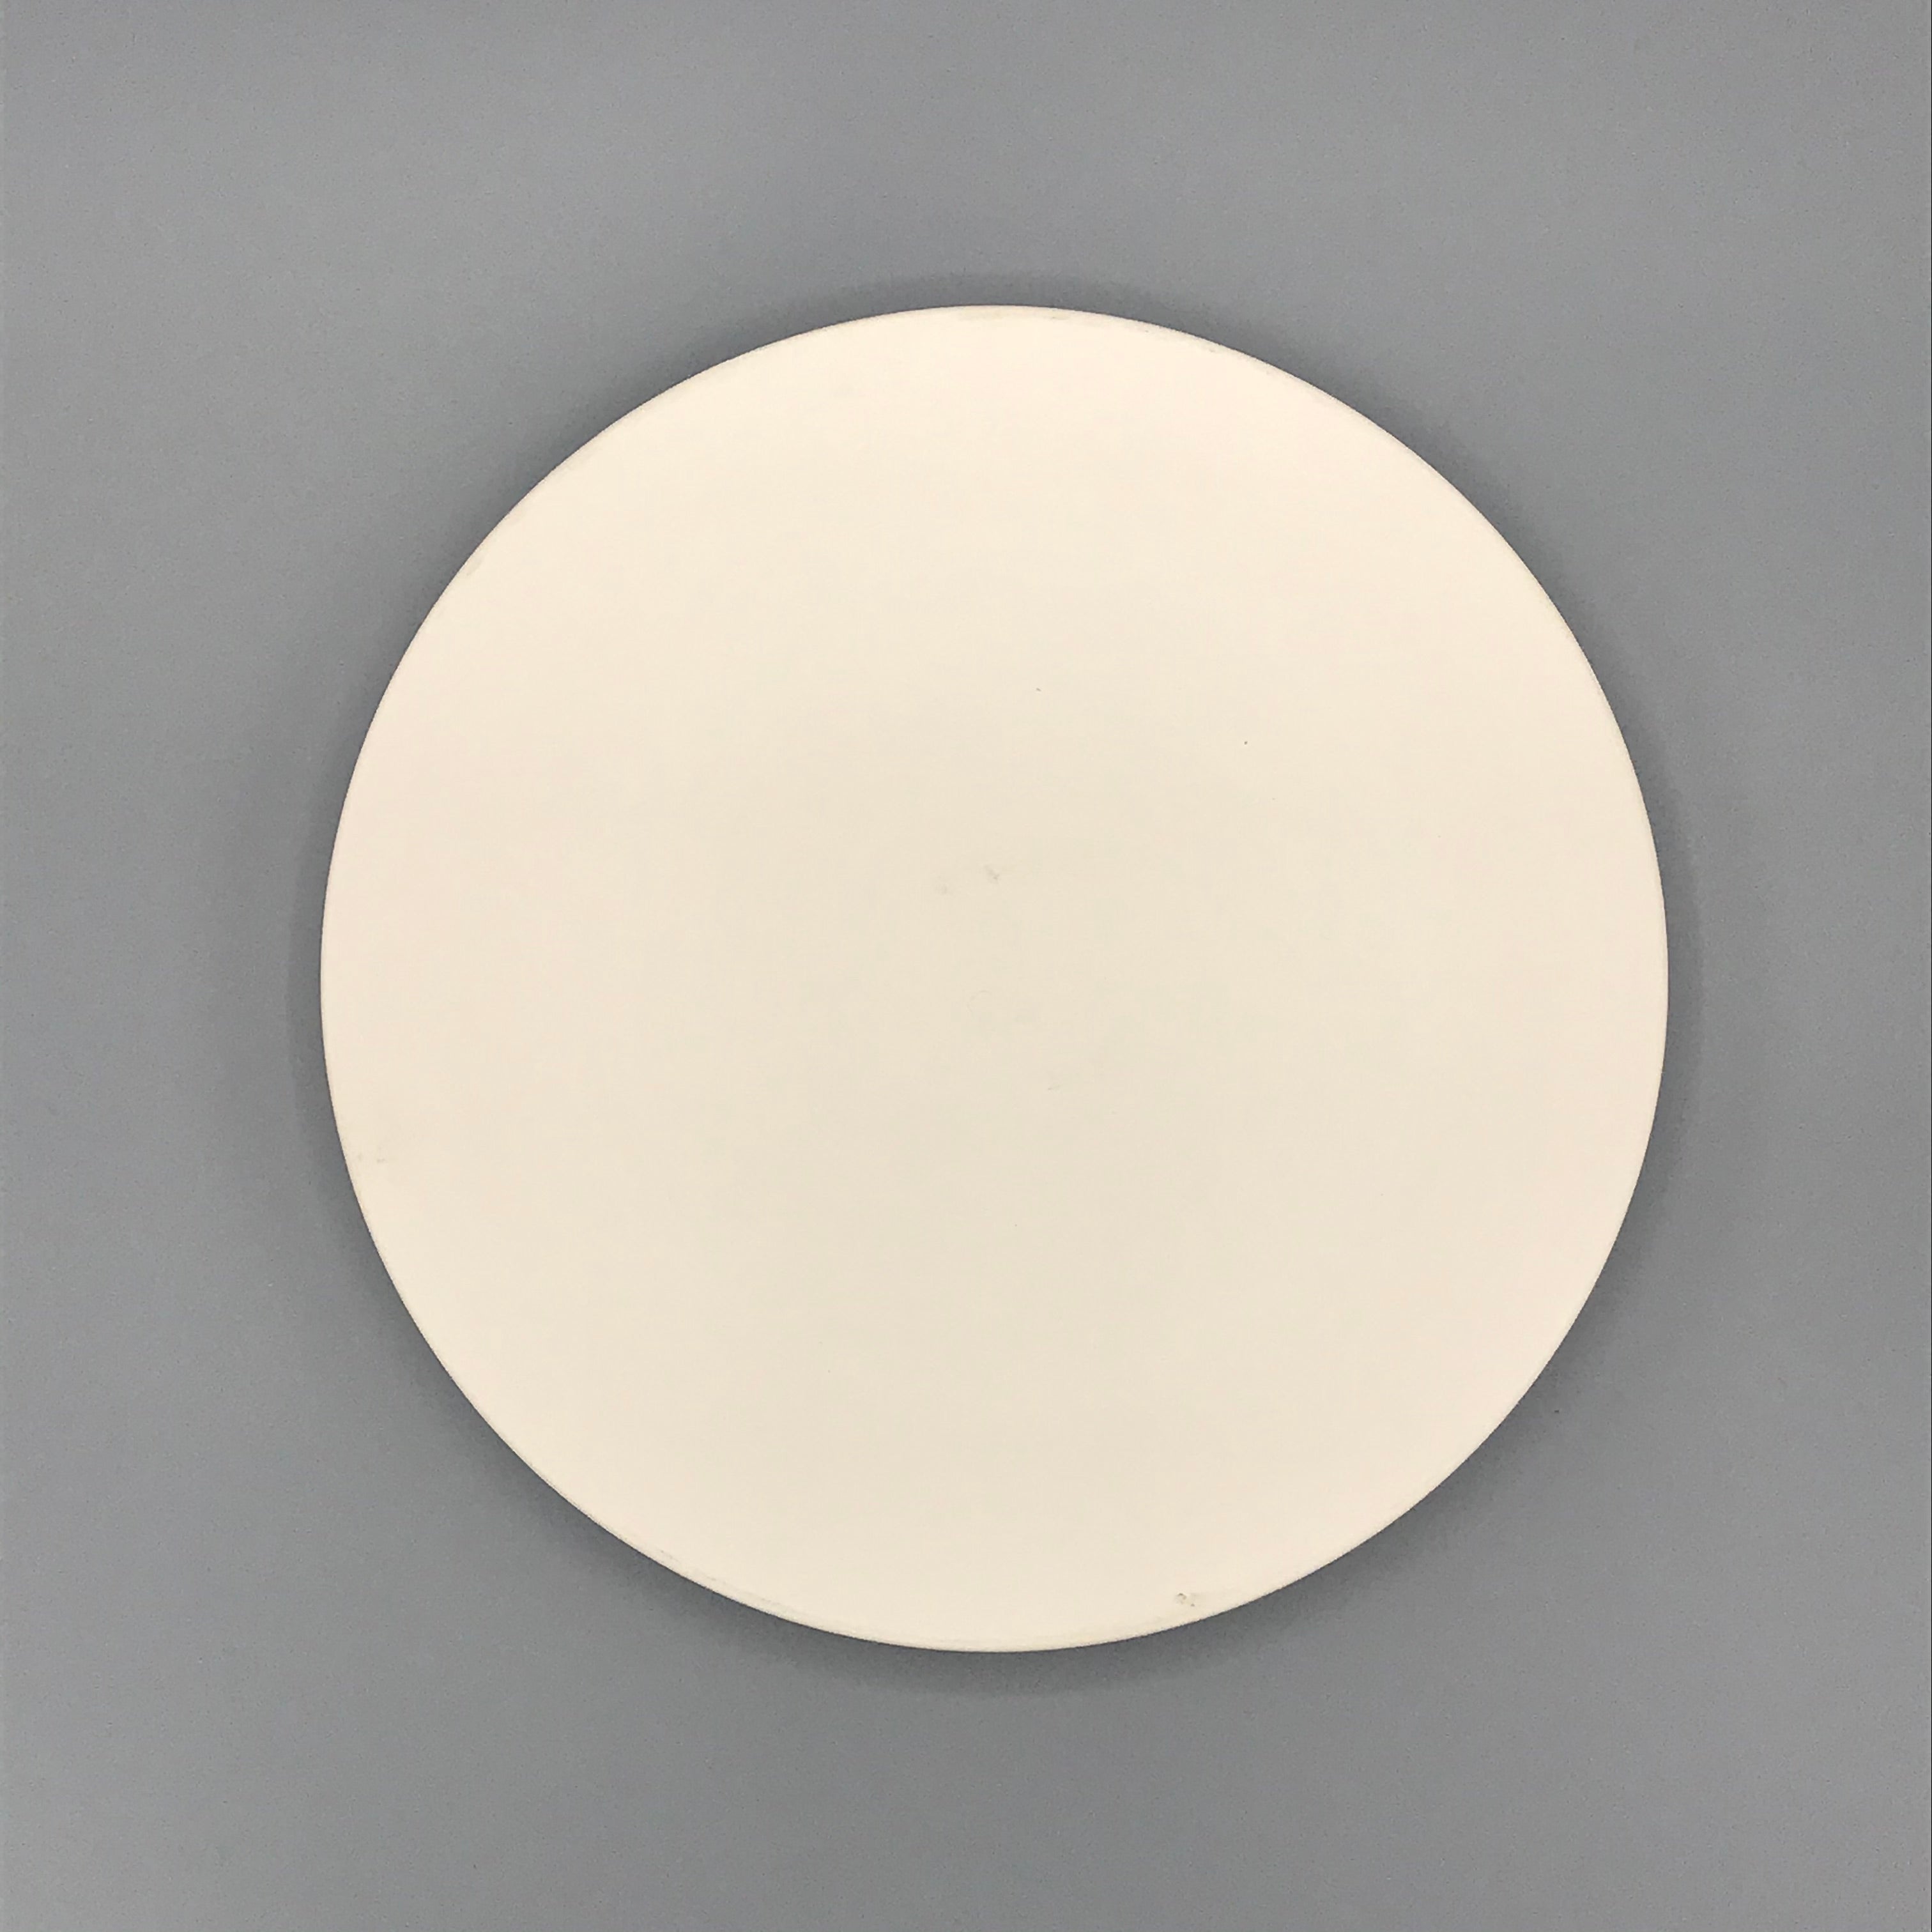 25cm Plain Plate - PaintPott